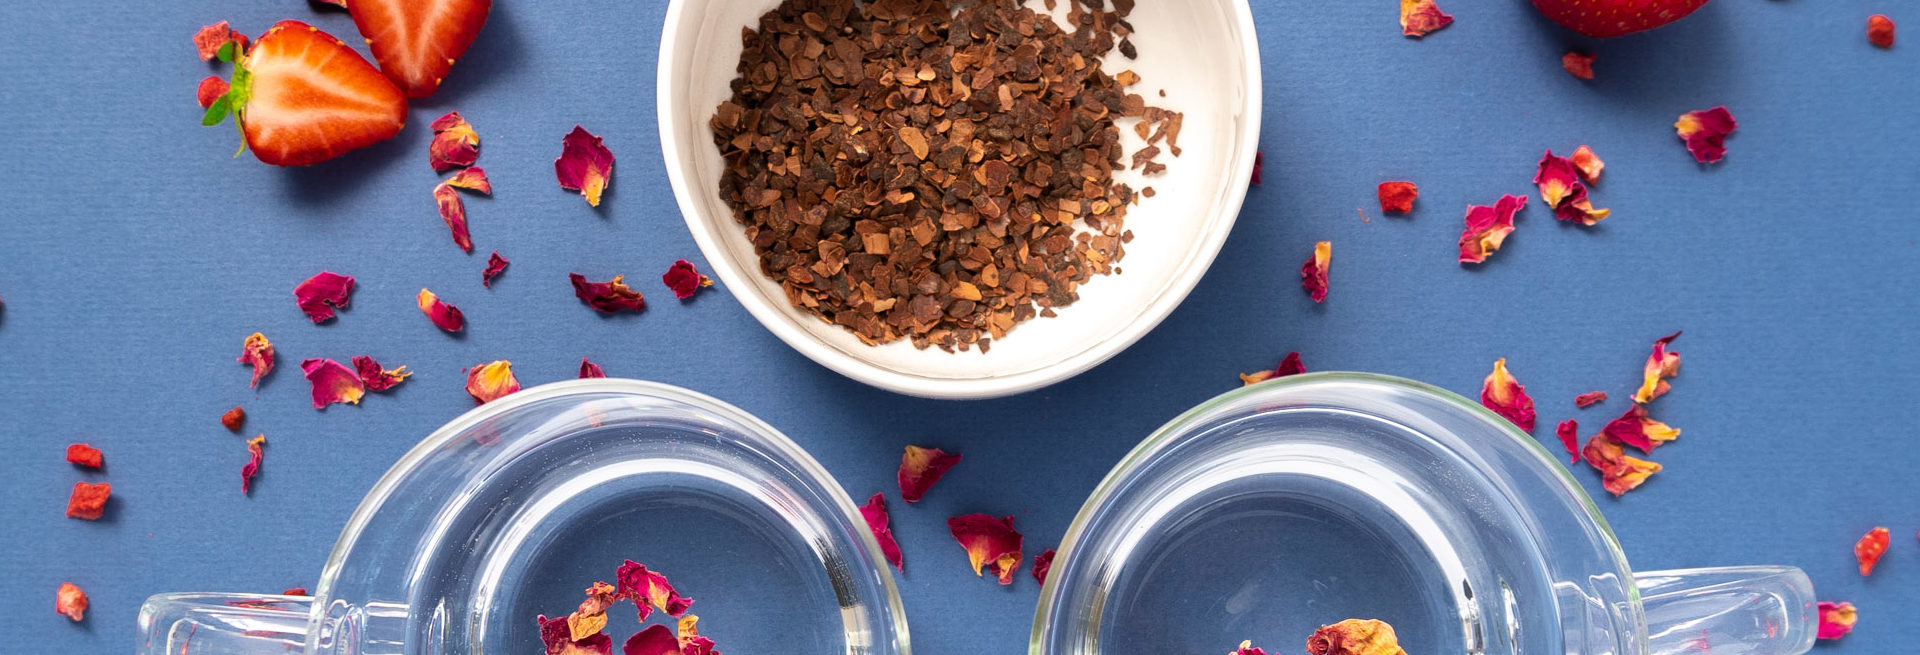 Ingrediënten voor een theerecept van cacao, aardbei en rozenblaadjes